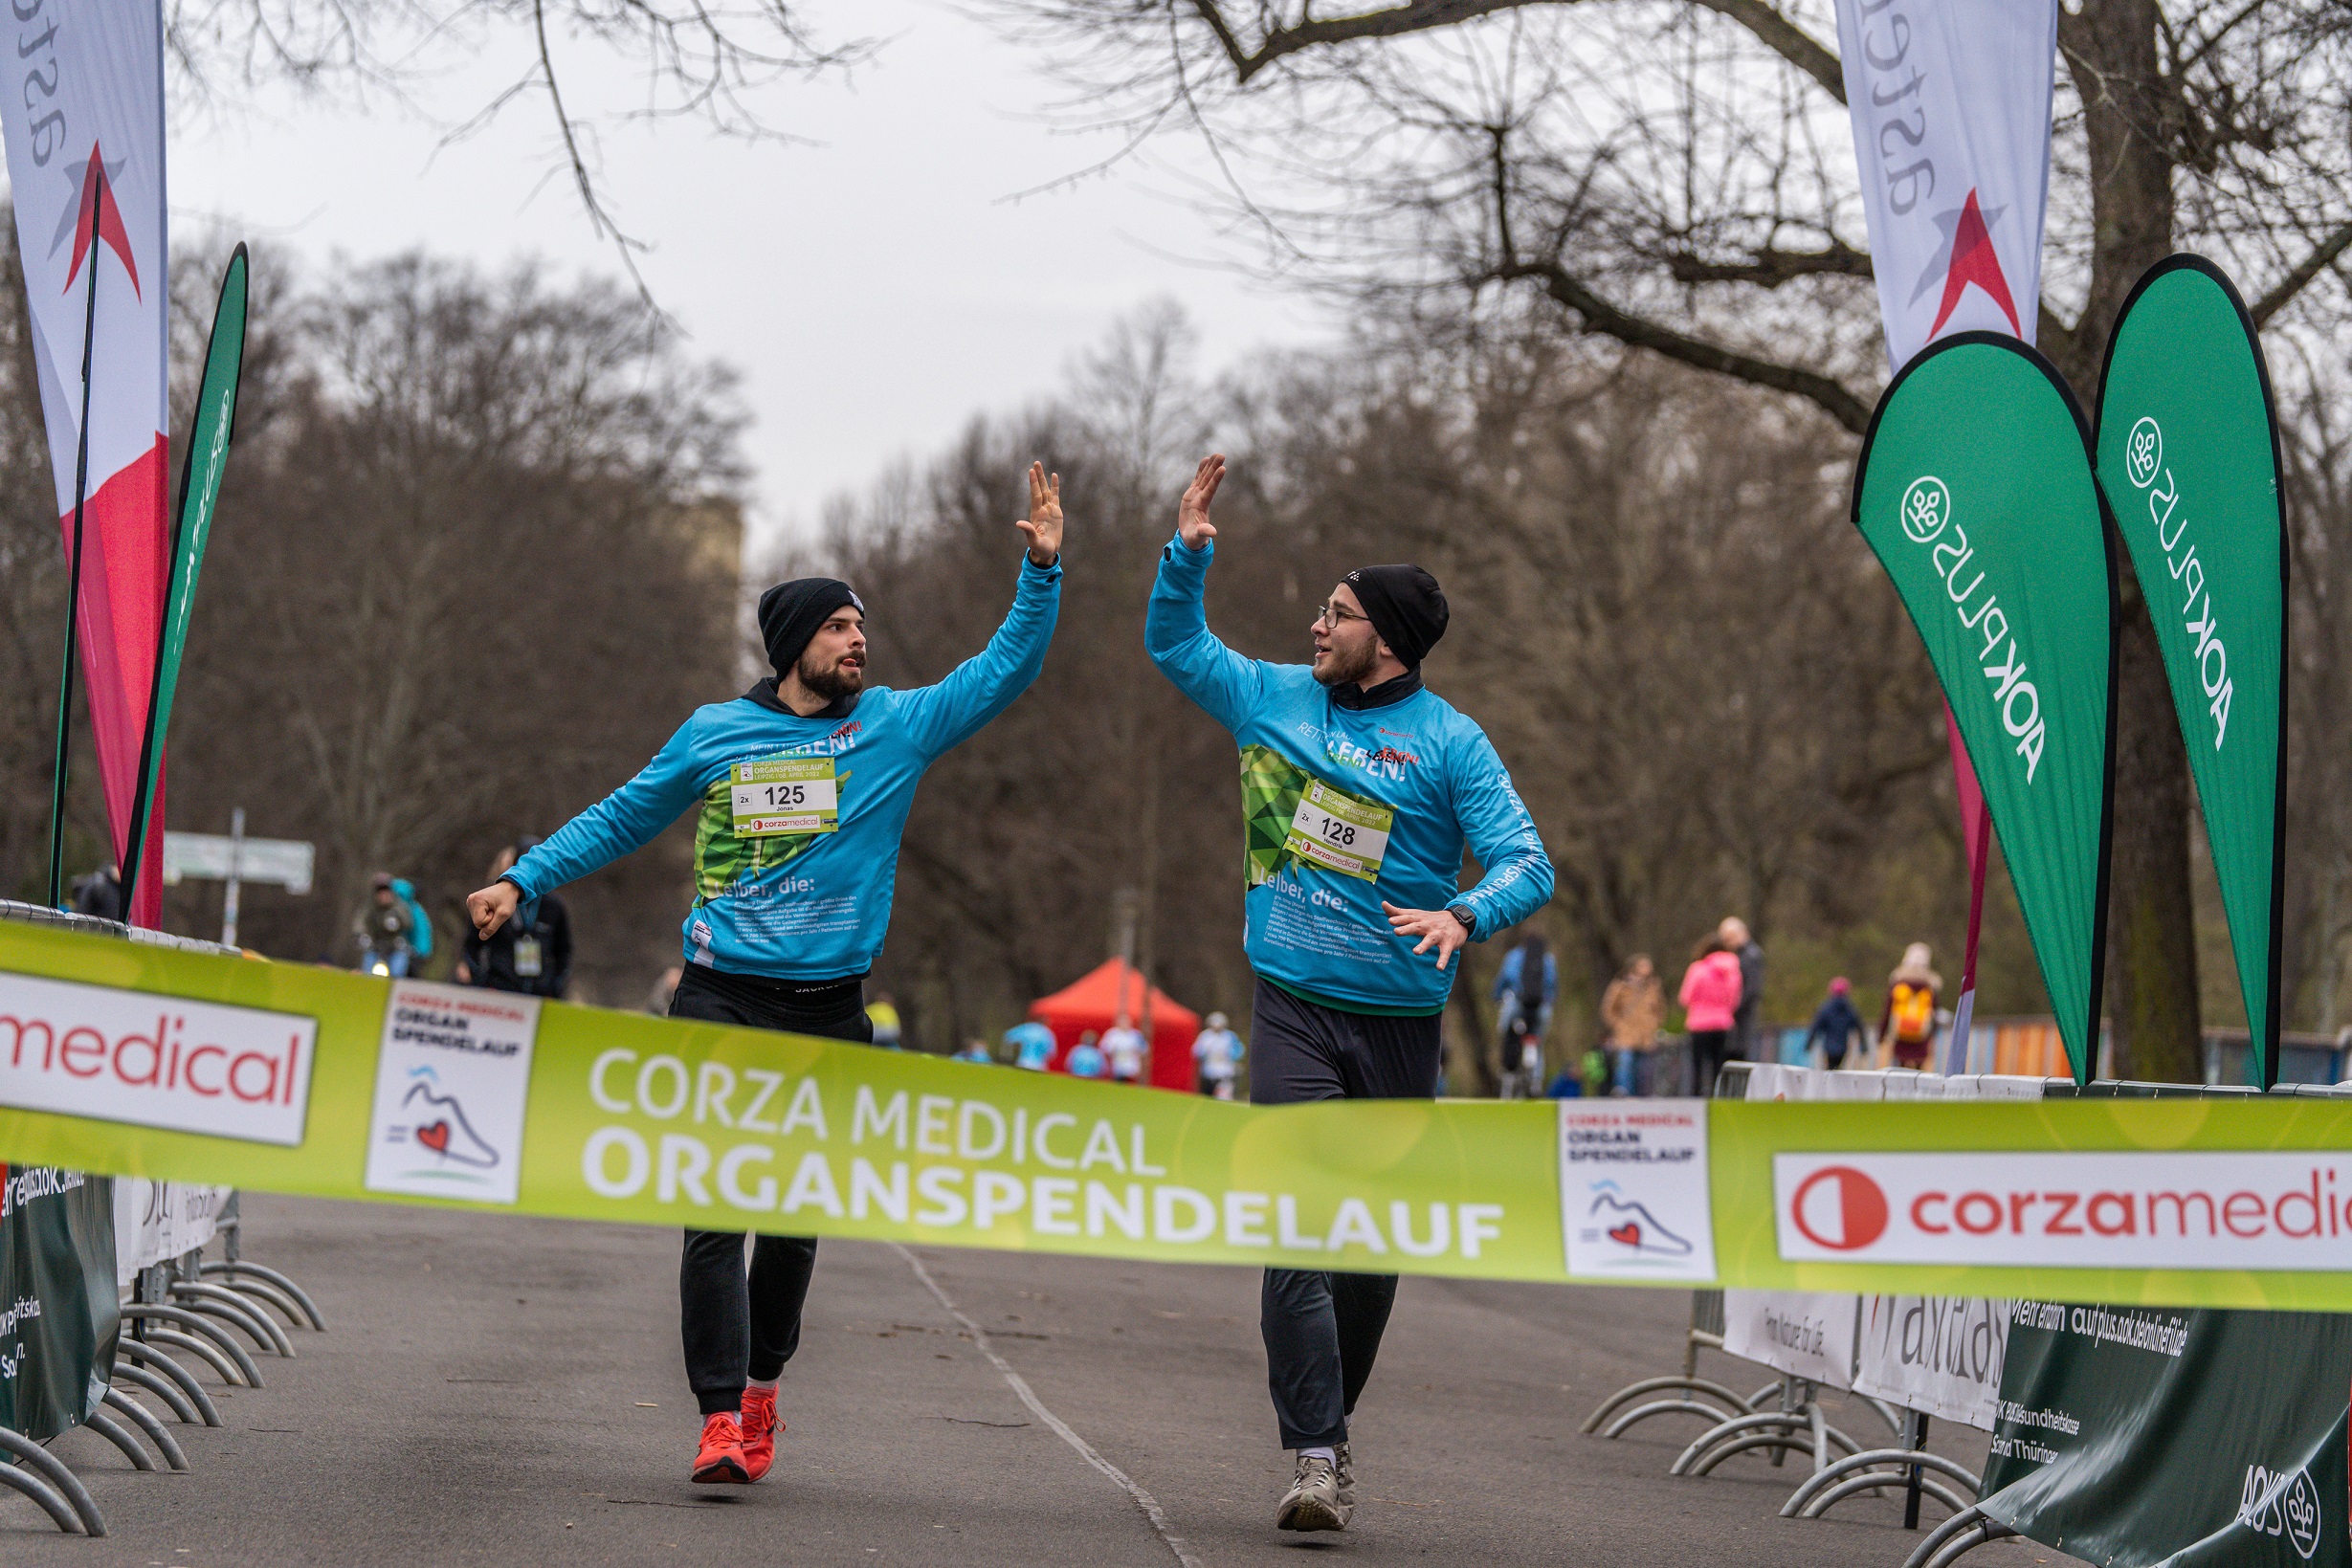 Am 25. April startet in München der Organspendelauf, an dem auch Mitglieder der Würzbürger Selbsthilfegruppe teilnehmen. Das Bild zeigt eine Szene vom vergangenen Organspendelauf in Leipzig.